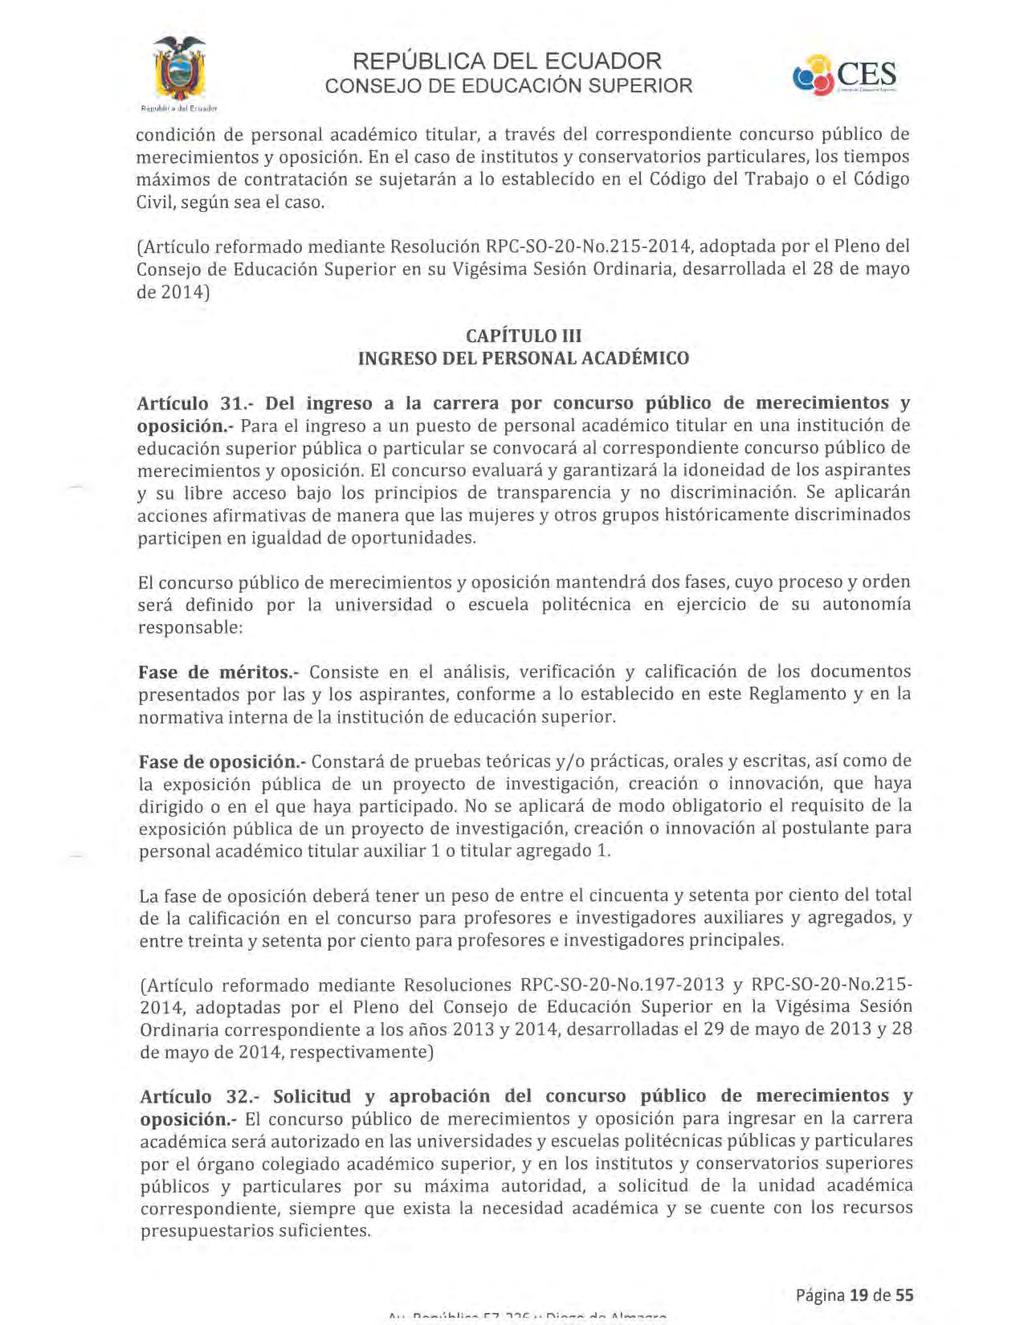 REPÚBLICA DEL ECUADOR CONSEJO DE EDUCACI6N SUPERIOR condición de personal académico titular, a través del correspondiente concurso público de merecimientos y oposición.